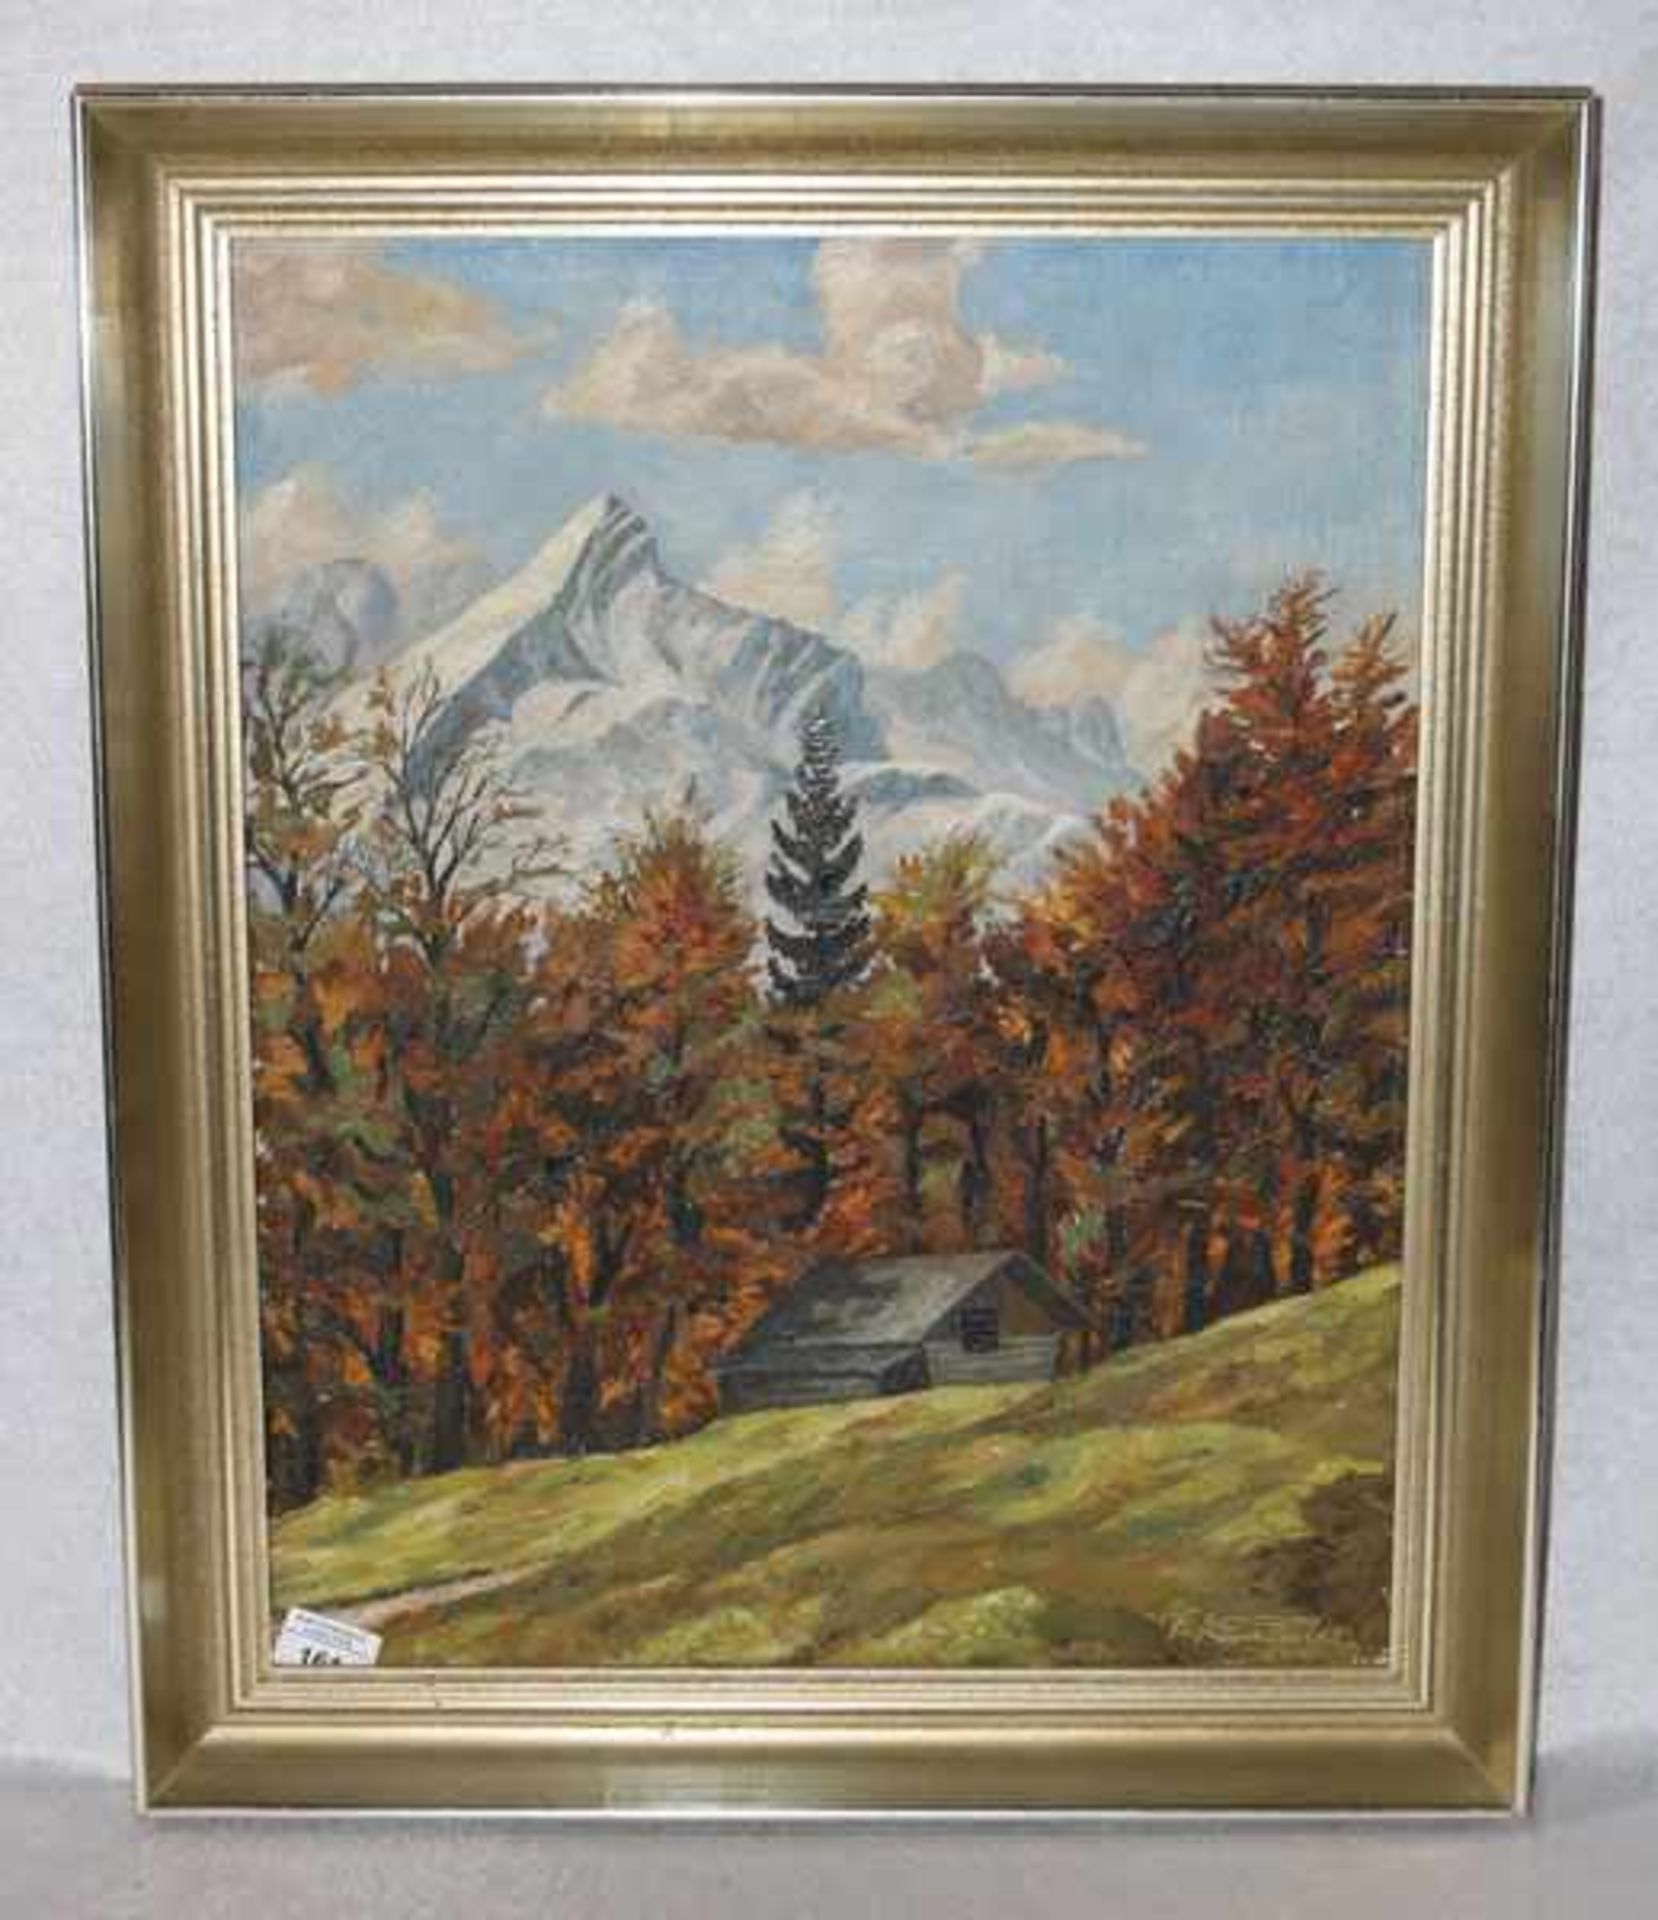 Gemälde ÖL/LW 'Herbst in Schlatan bei Garmisch', signiert Fr. Kamleiter, 1945, gerahmt, Rahmen